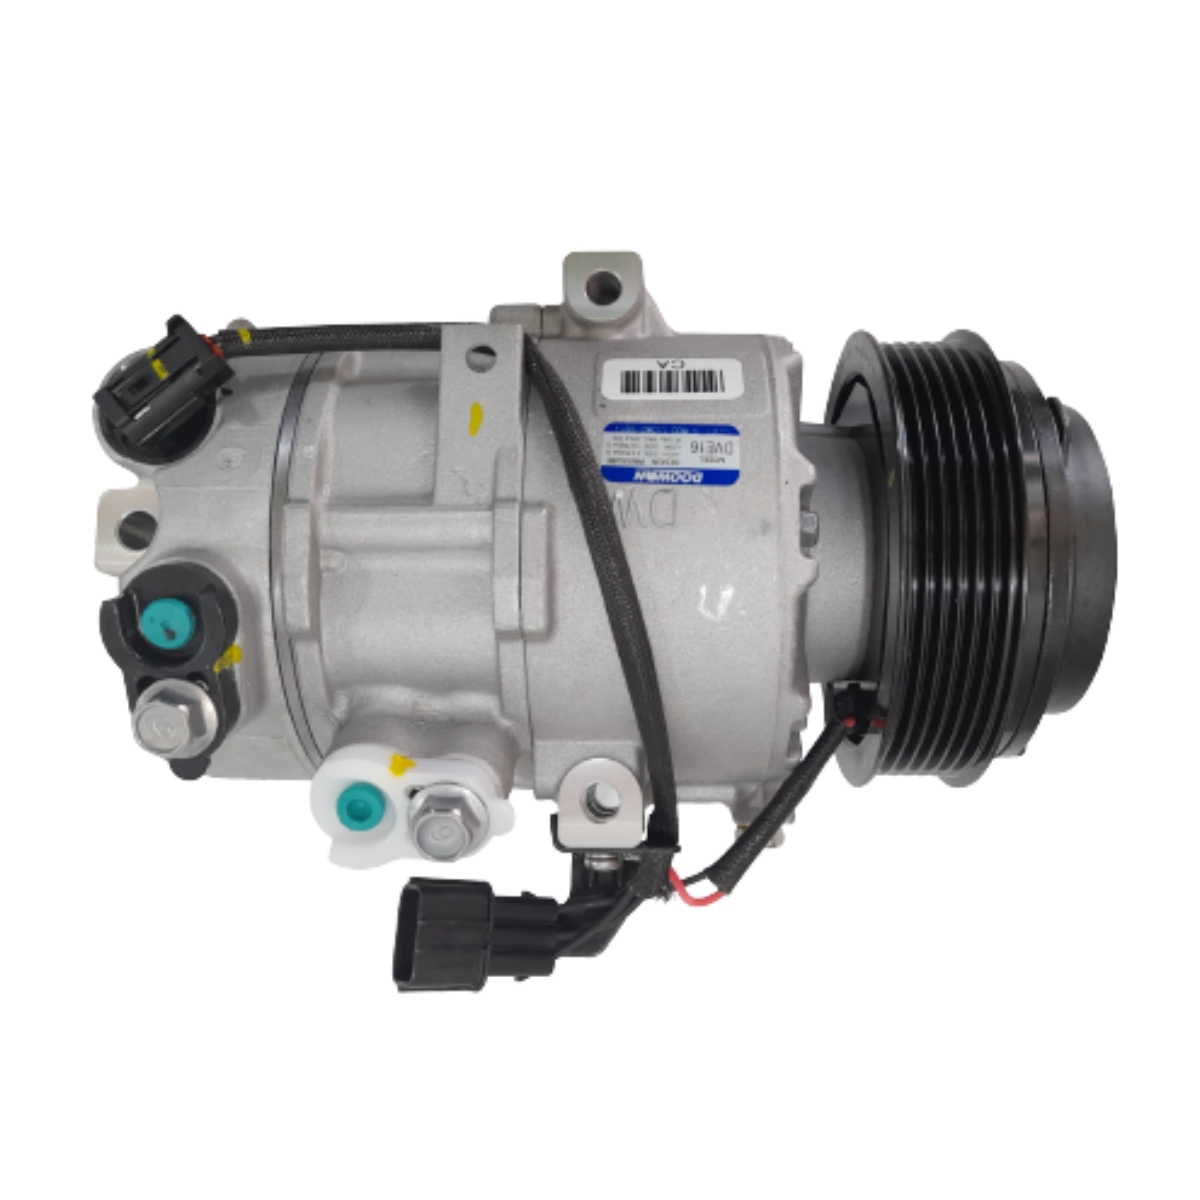 Compressor Ar Hyundai Ix35 07/2015 Ate 12/2020 Ar Condicionado Doowon B97701-2s602